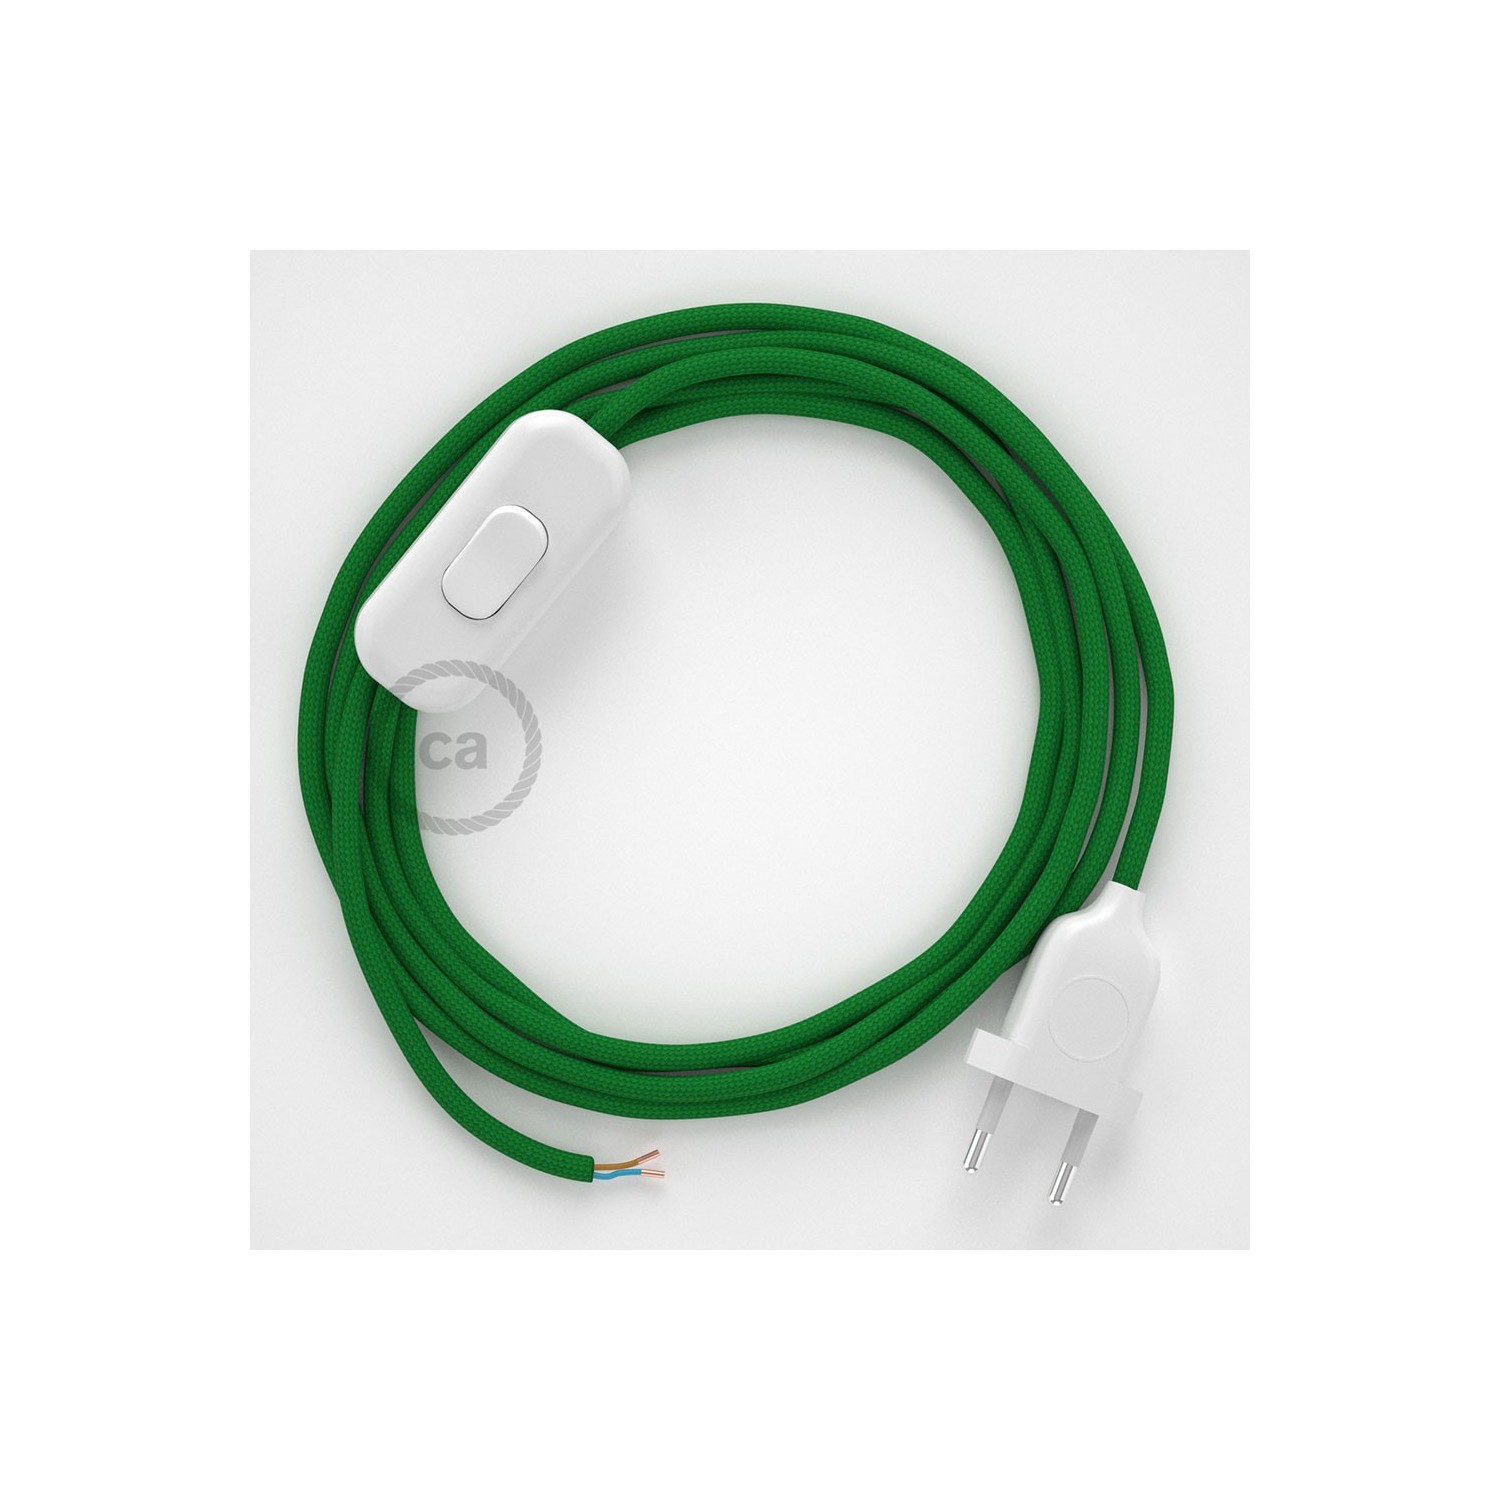 Cordon pour lampe, câble RM06 Effet Soie Vert 1,80 m. Choisissez la couleur de la fiche et de l'interrupteur!